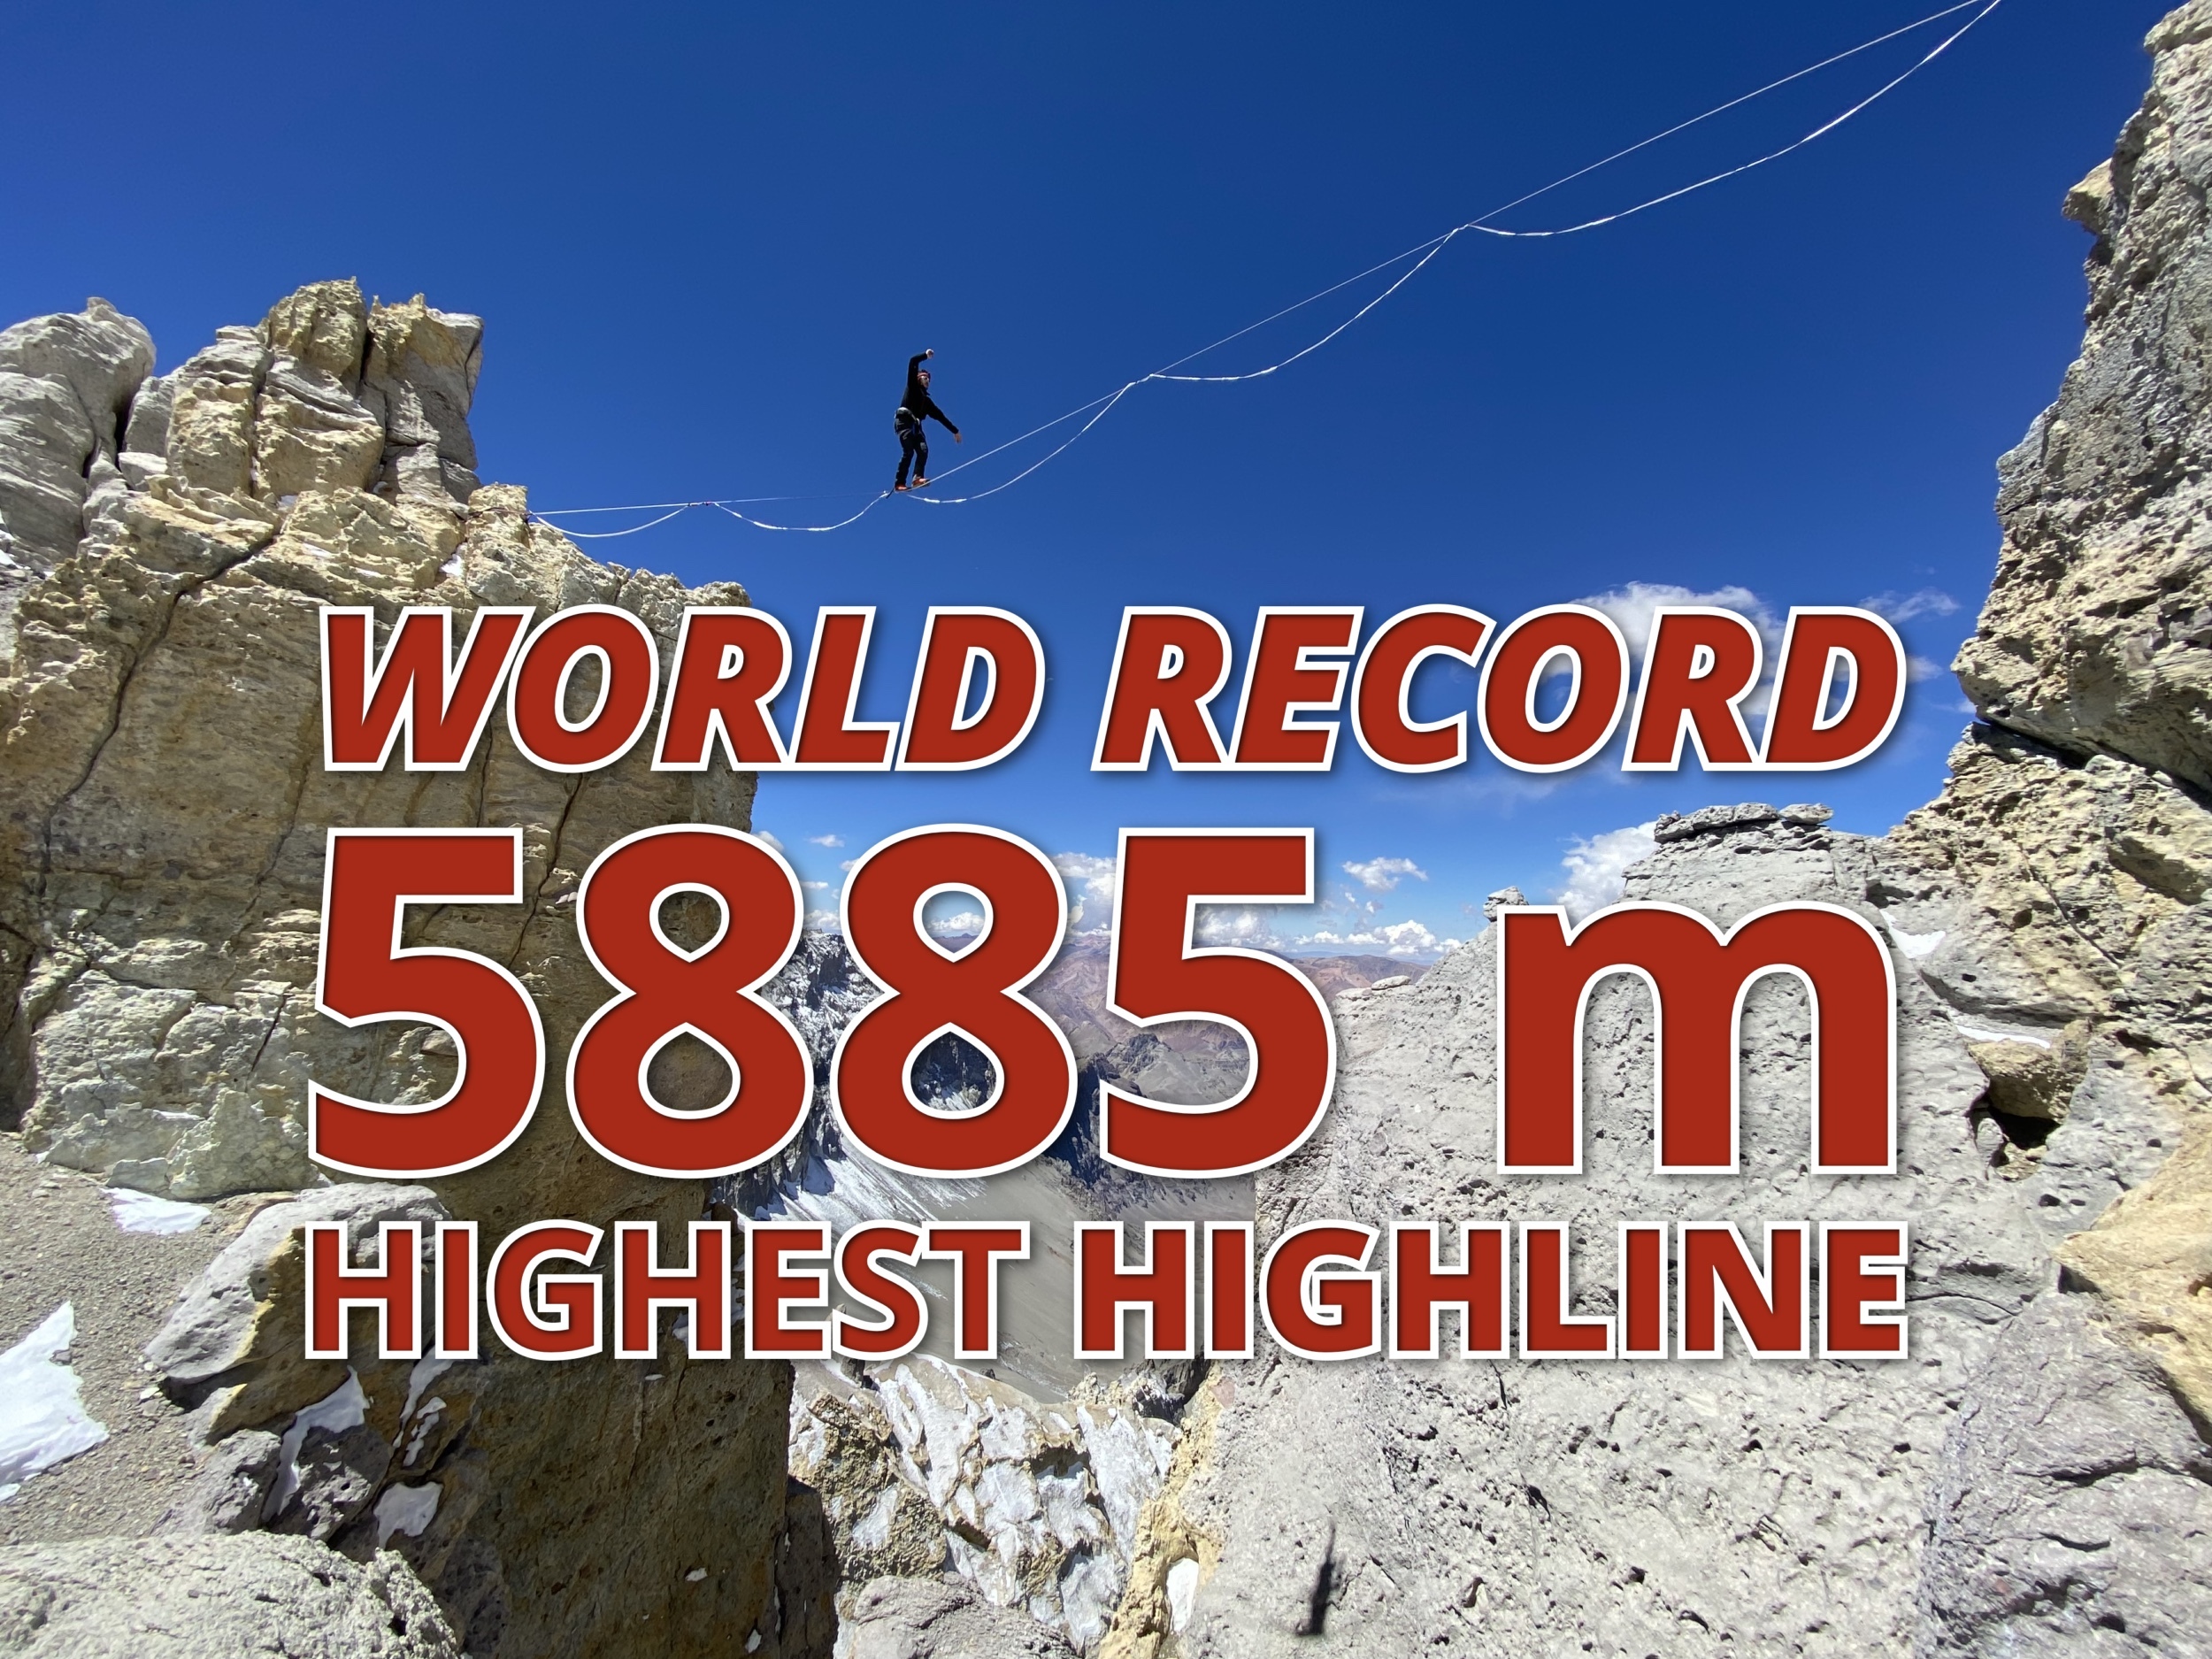 World Record: Highest Highline